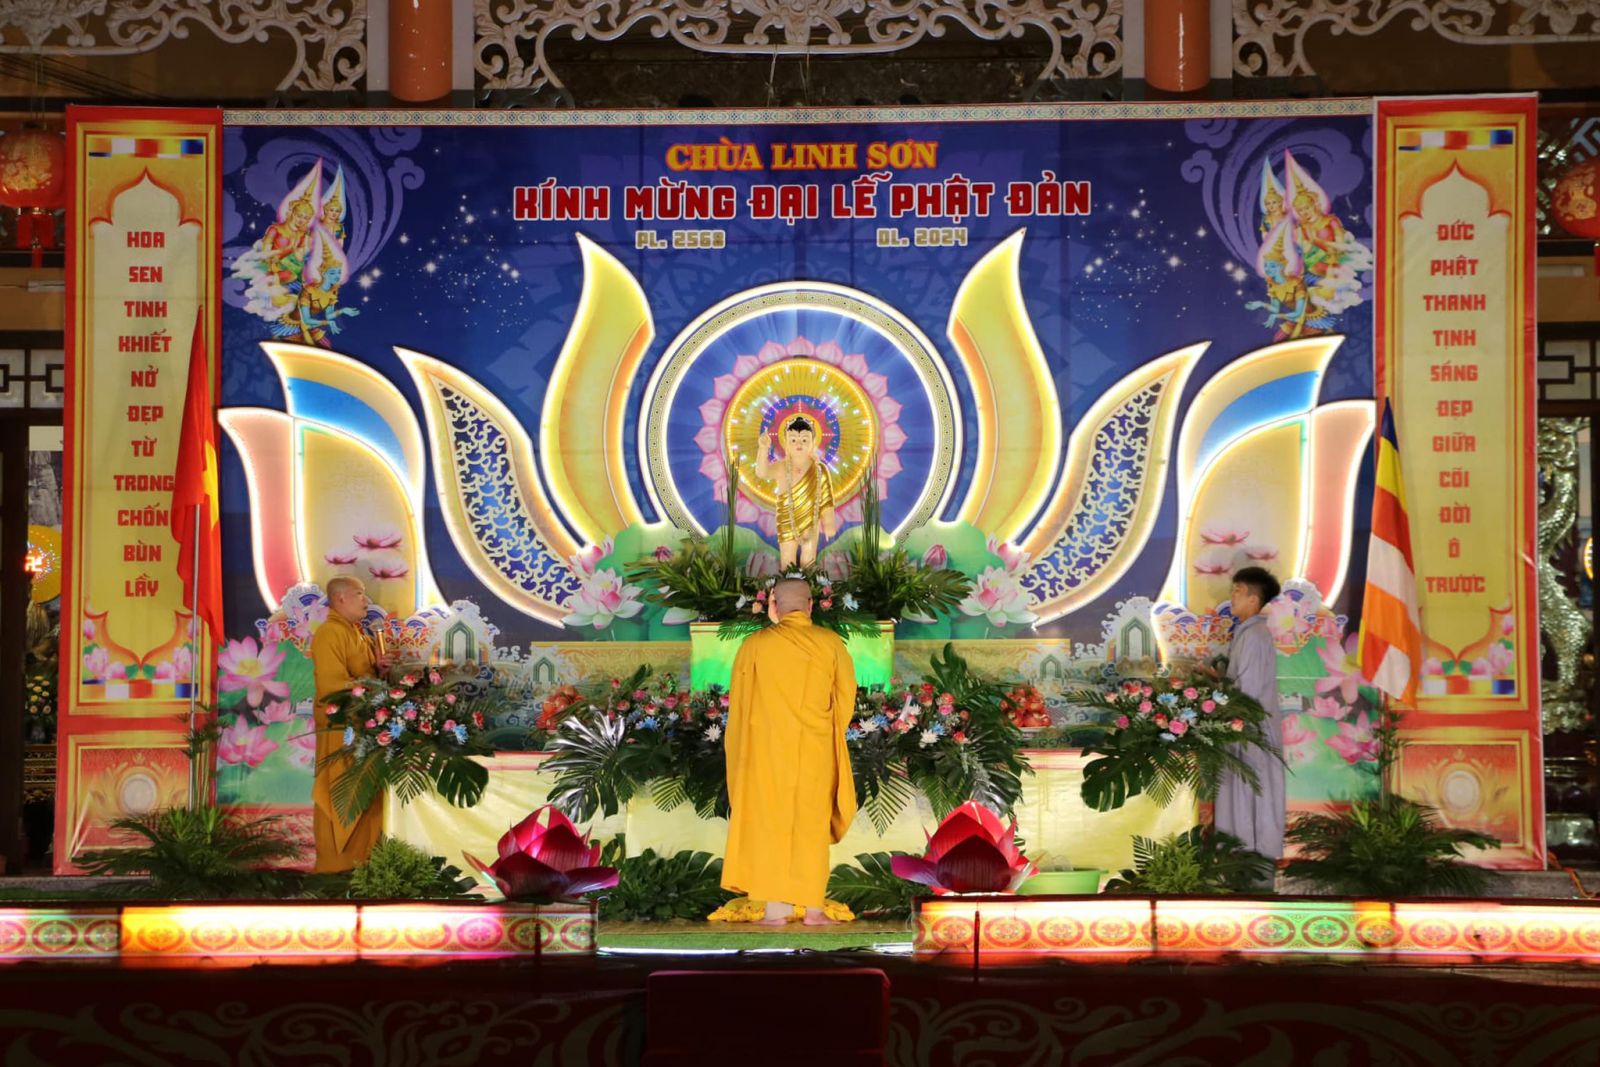 Đăk Mil: Lễ khai kinh Phật Đản và lễ Tắm Phật PL. 2568 tại lễ đài chùa Linh Sơn